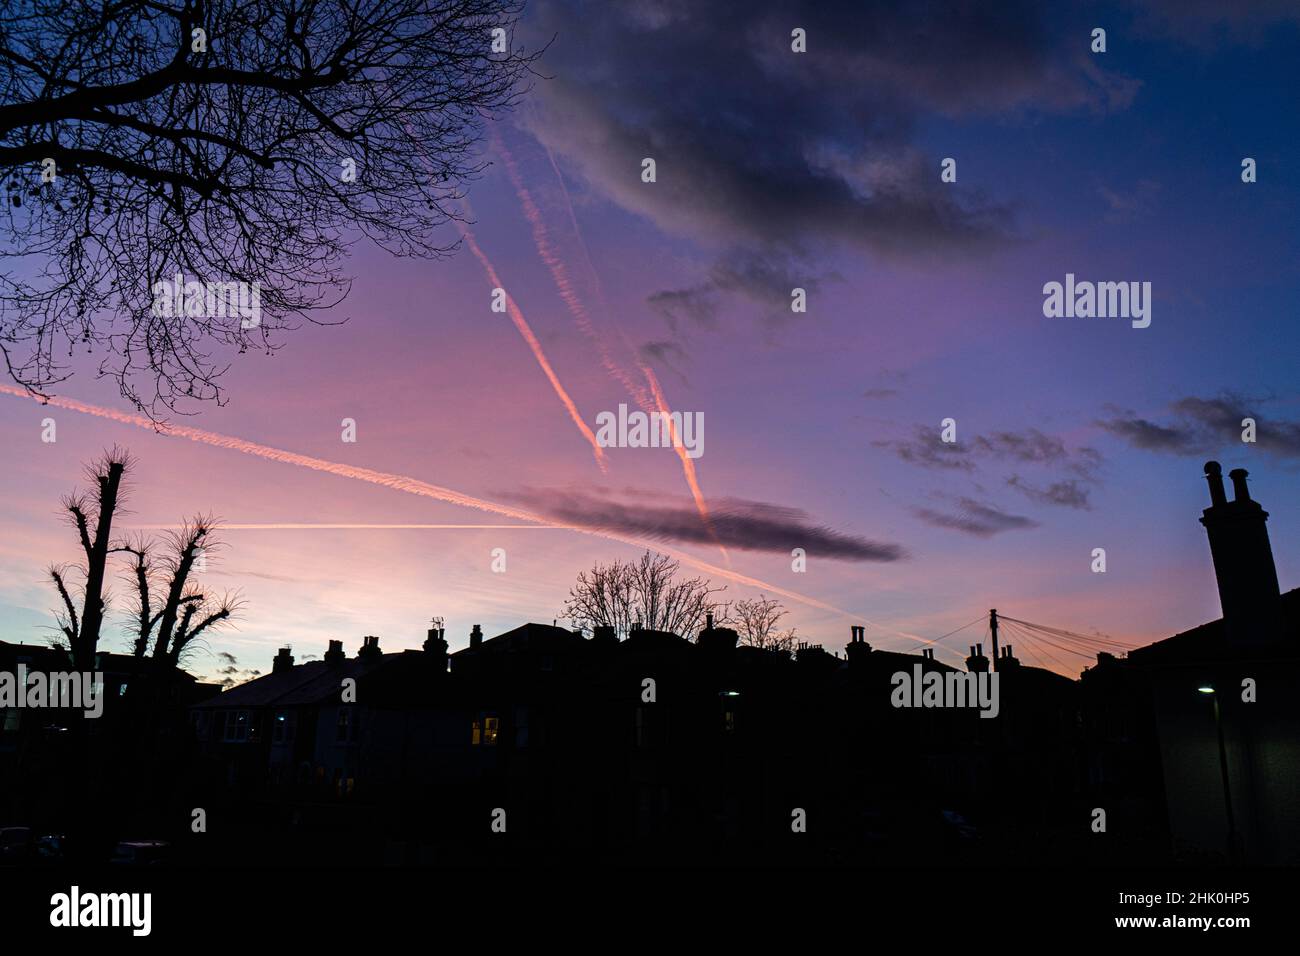 WIMBLEDON LONDRA, REGNO UNITO. 1 febbraio 2022. Percorsi Vapor nel cielo durante un tramonto colorato a Wimbledon, nel sud-ovest di Londra. Credit: amer Ghazzal/Alamy Live News Foto Stock